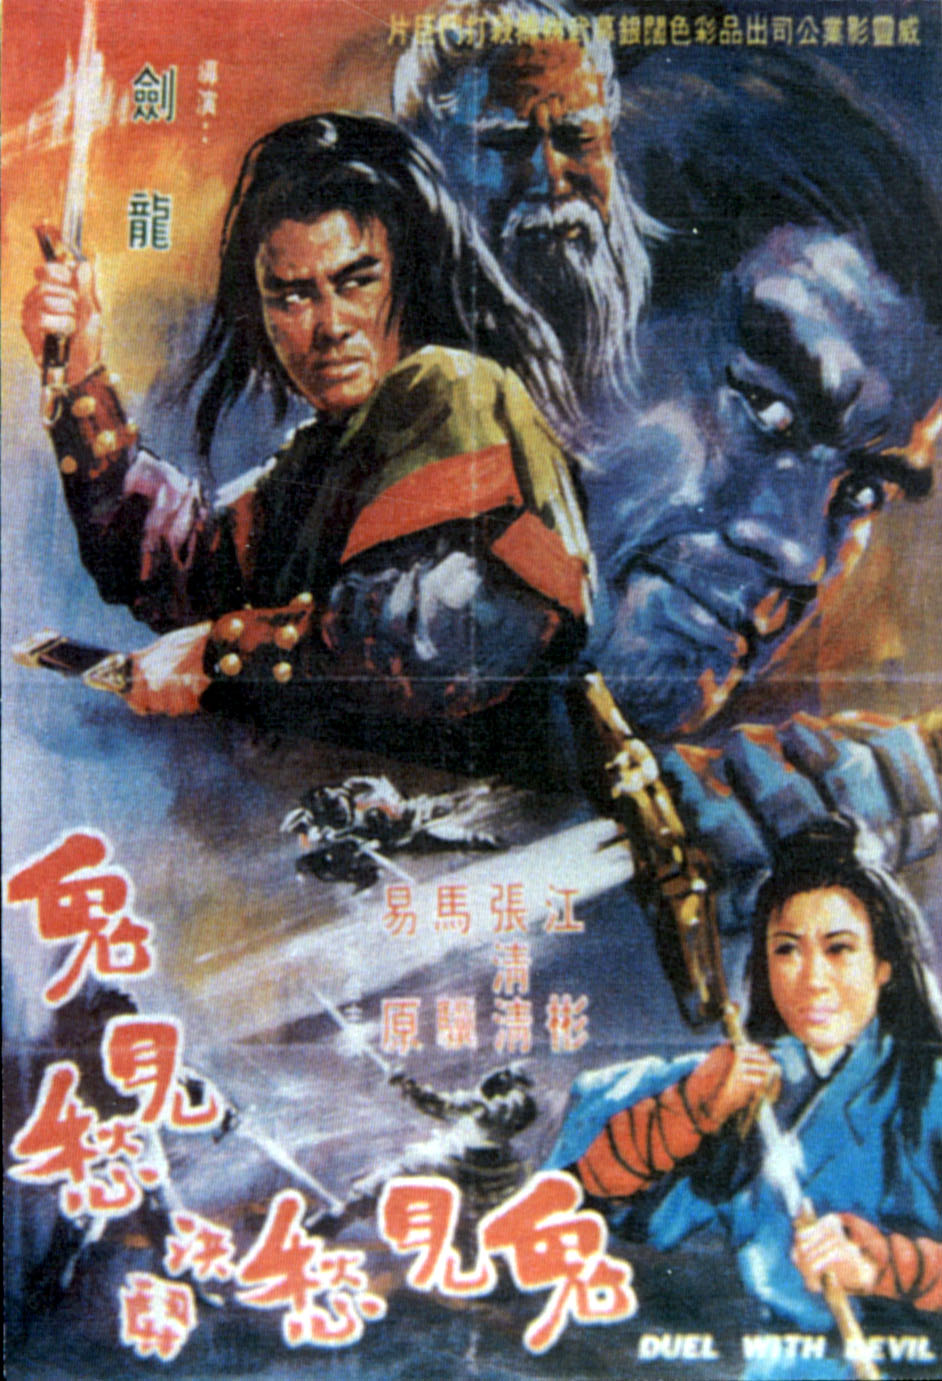 Mang nu jue dou gui jian chou (1970) Screenshot 1